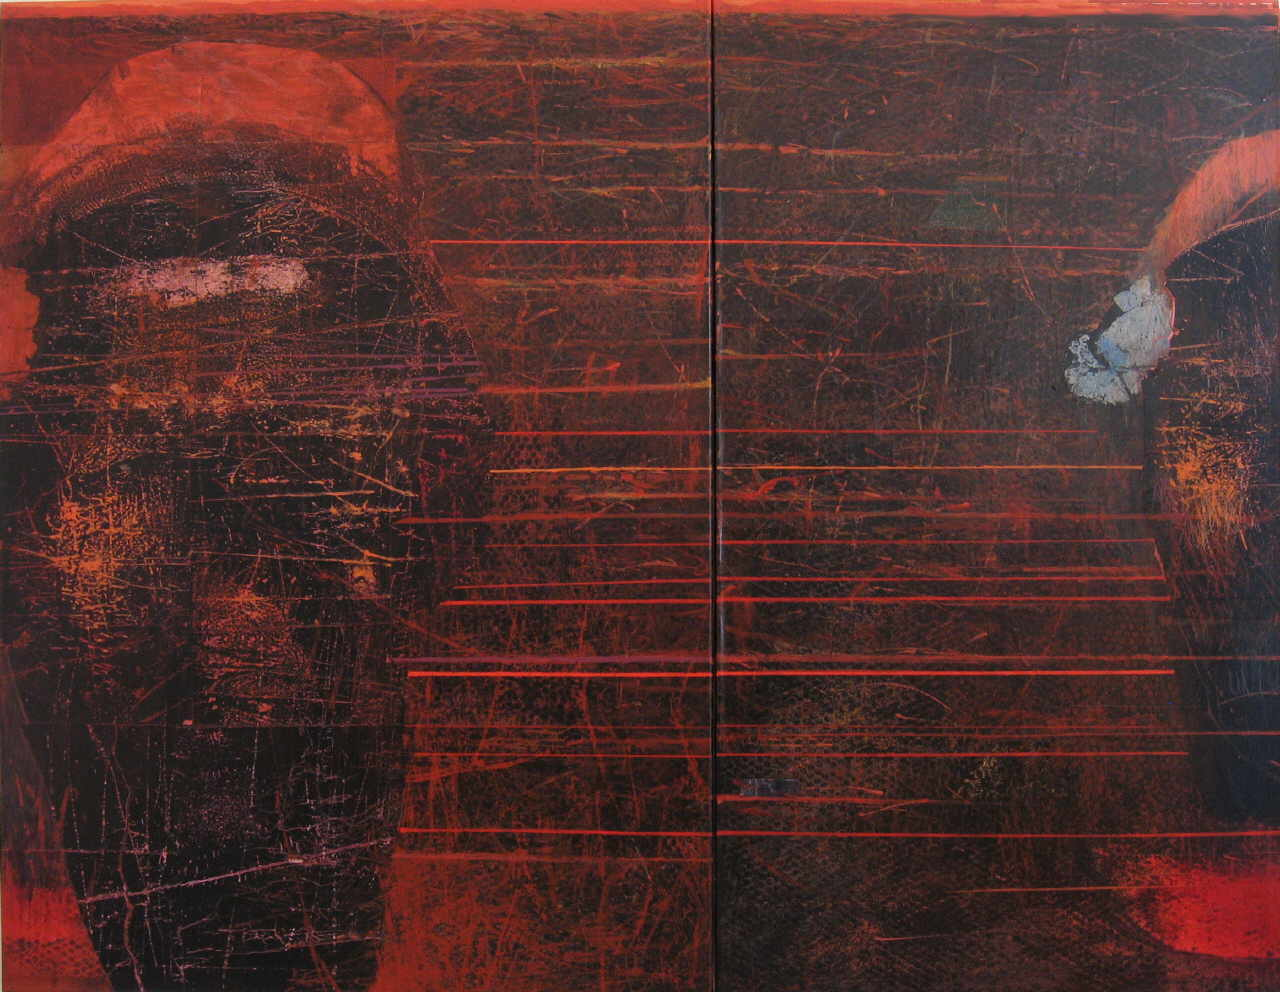 Mendrek Pawel 
"Moments", 2005
Öl / Leinwand
140 x 170 cm (2 teilig)